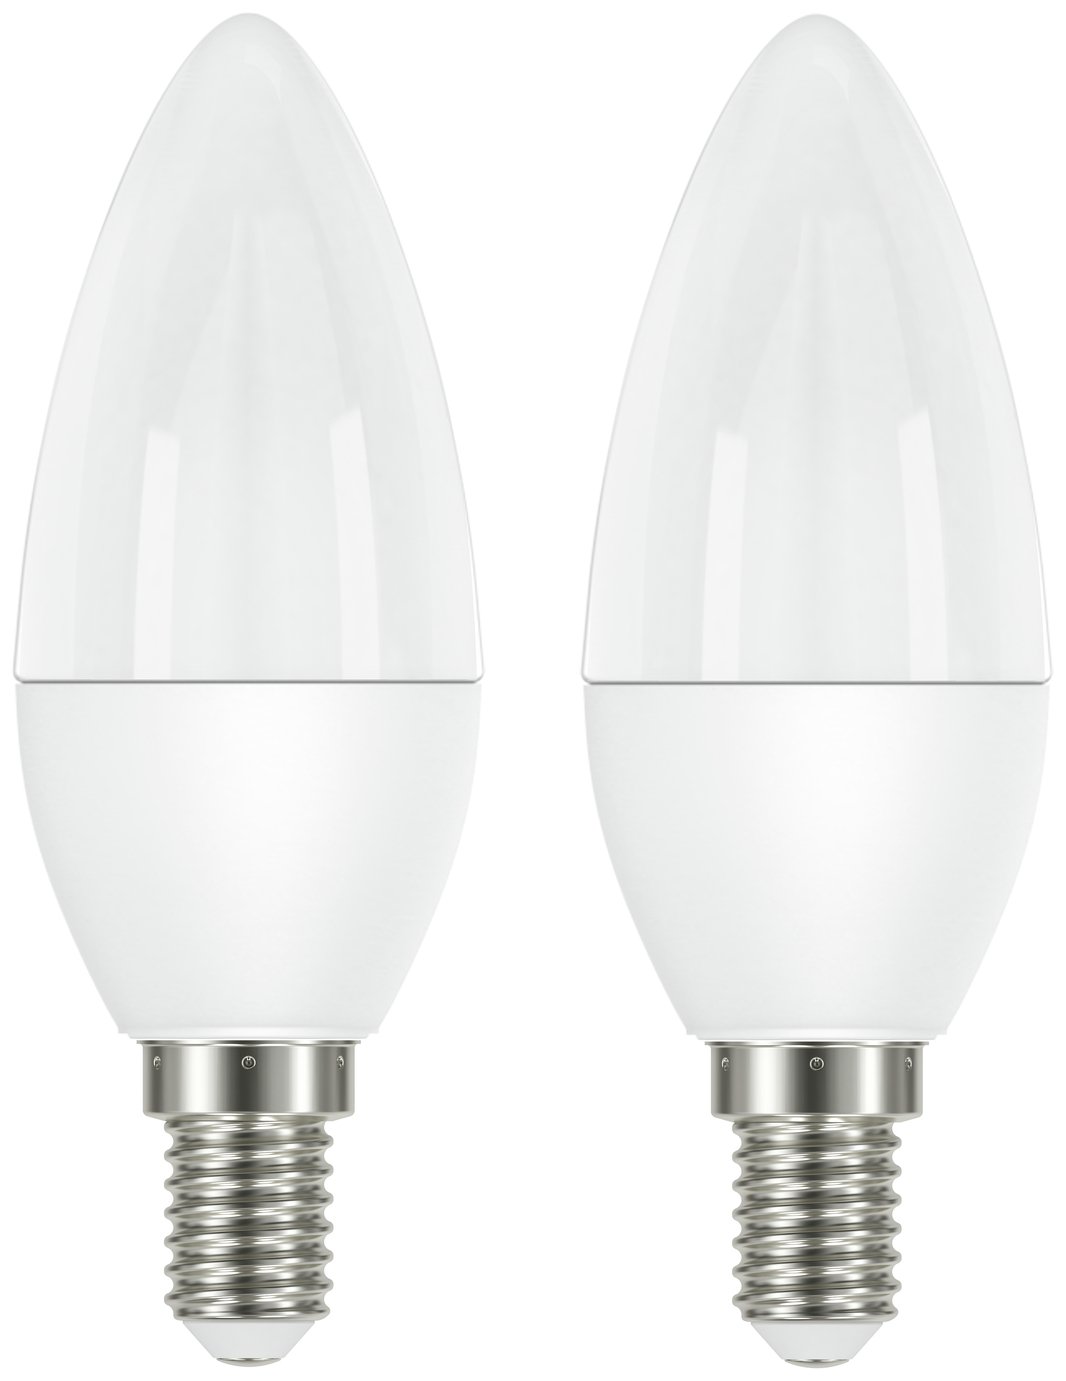 Argos Home 7.2W LED SES Light Bulbs - 2 Pack